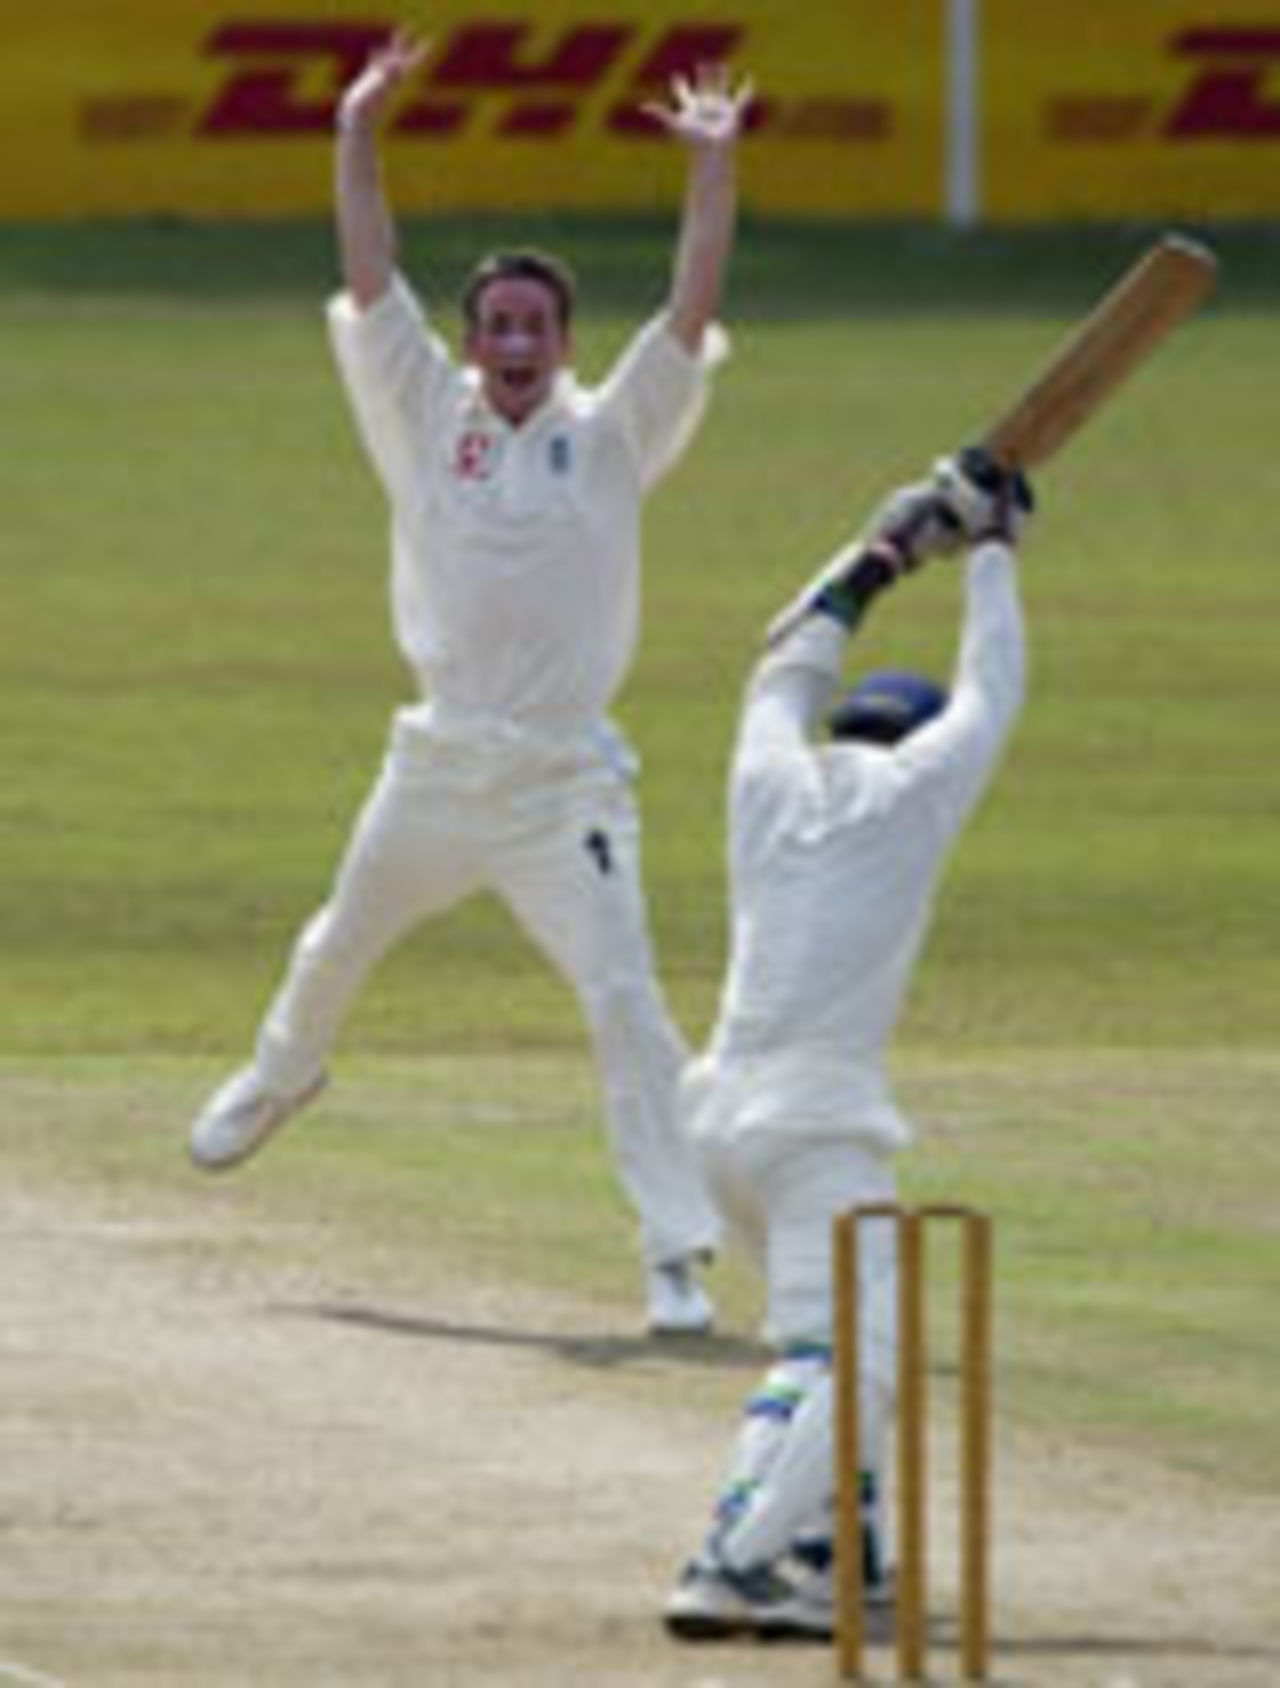 Jamess Kirtley celebrates wicket, Sri Lanka Board XI v England XI, Colombo, November 26, 2003